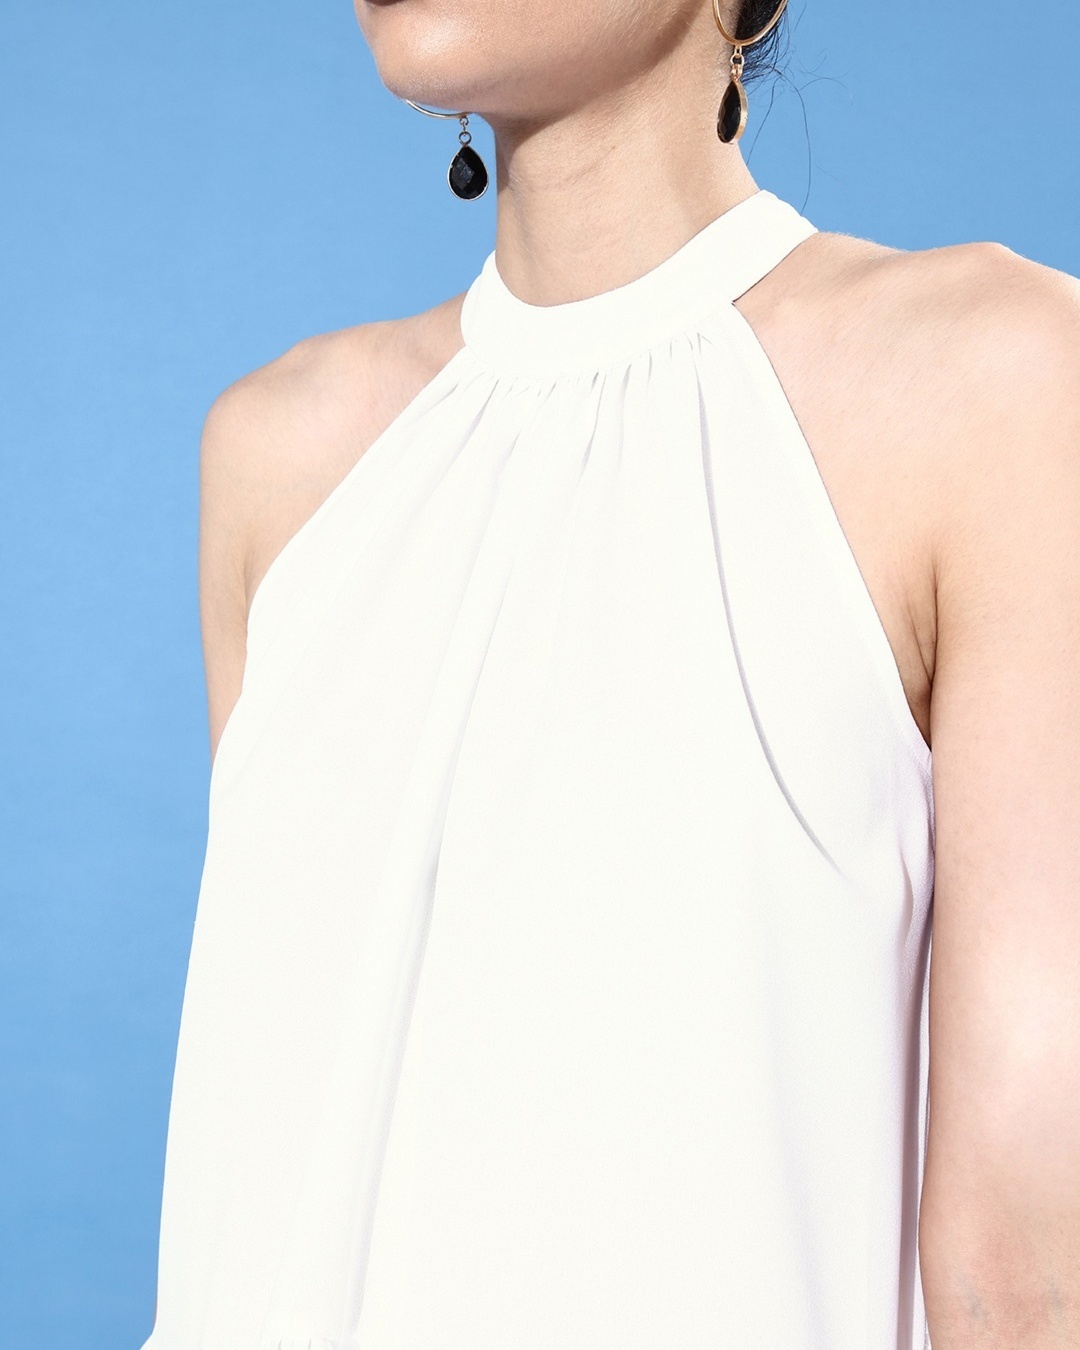 Buy Women's White Halter Neck Top for Women White Online at Bewakoof